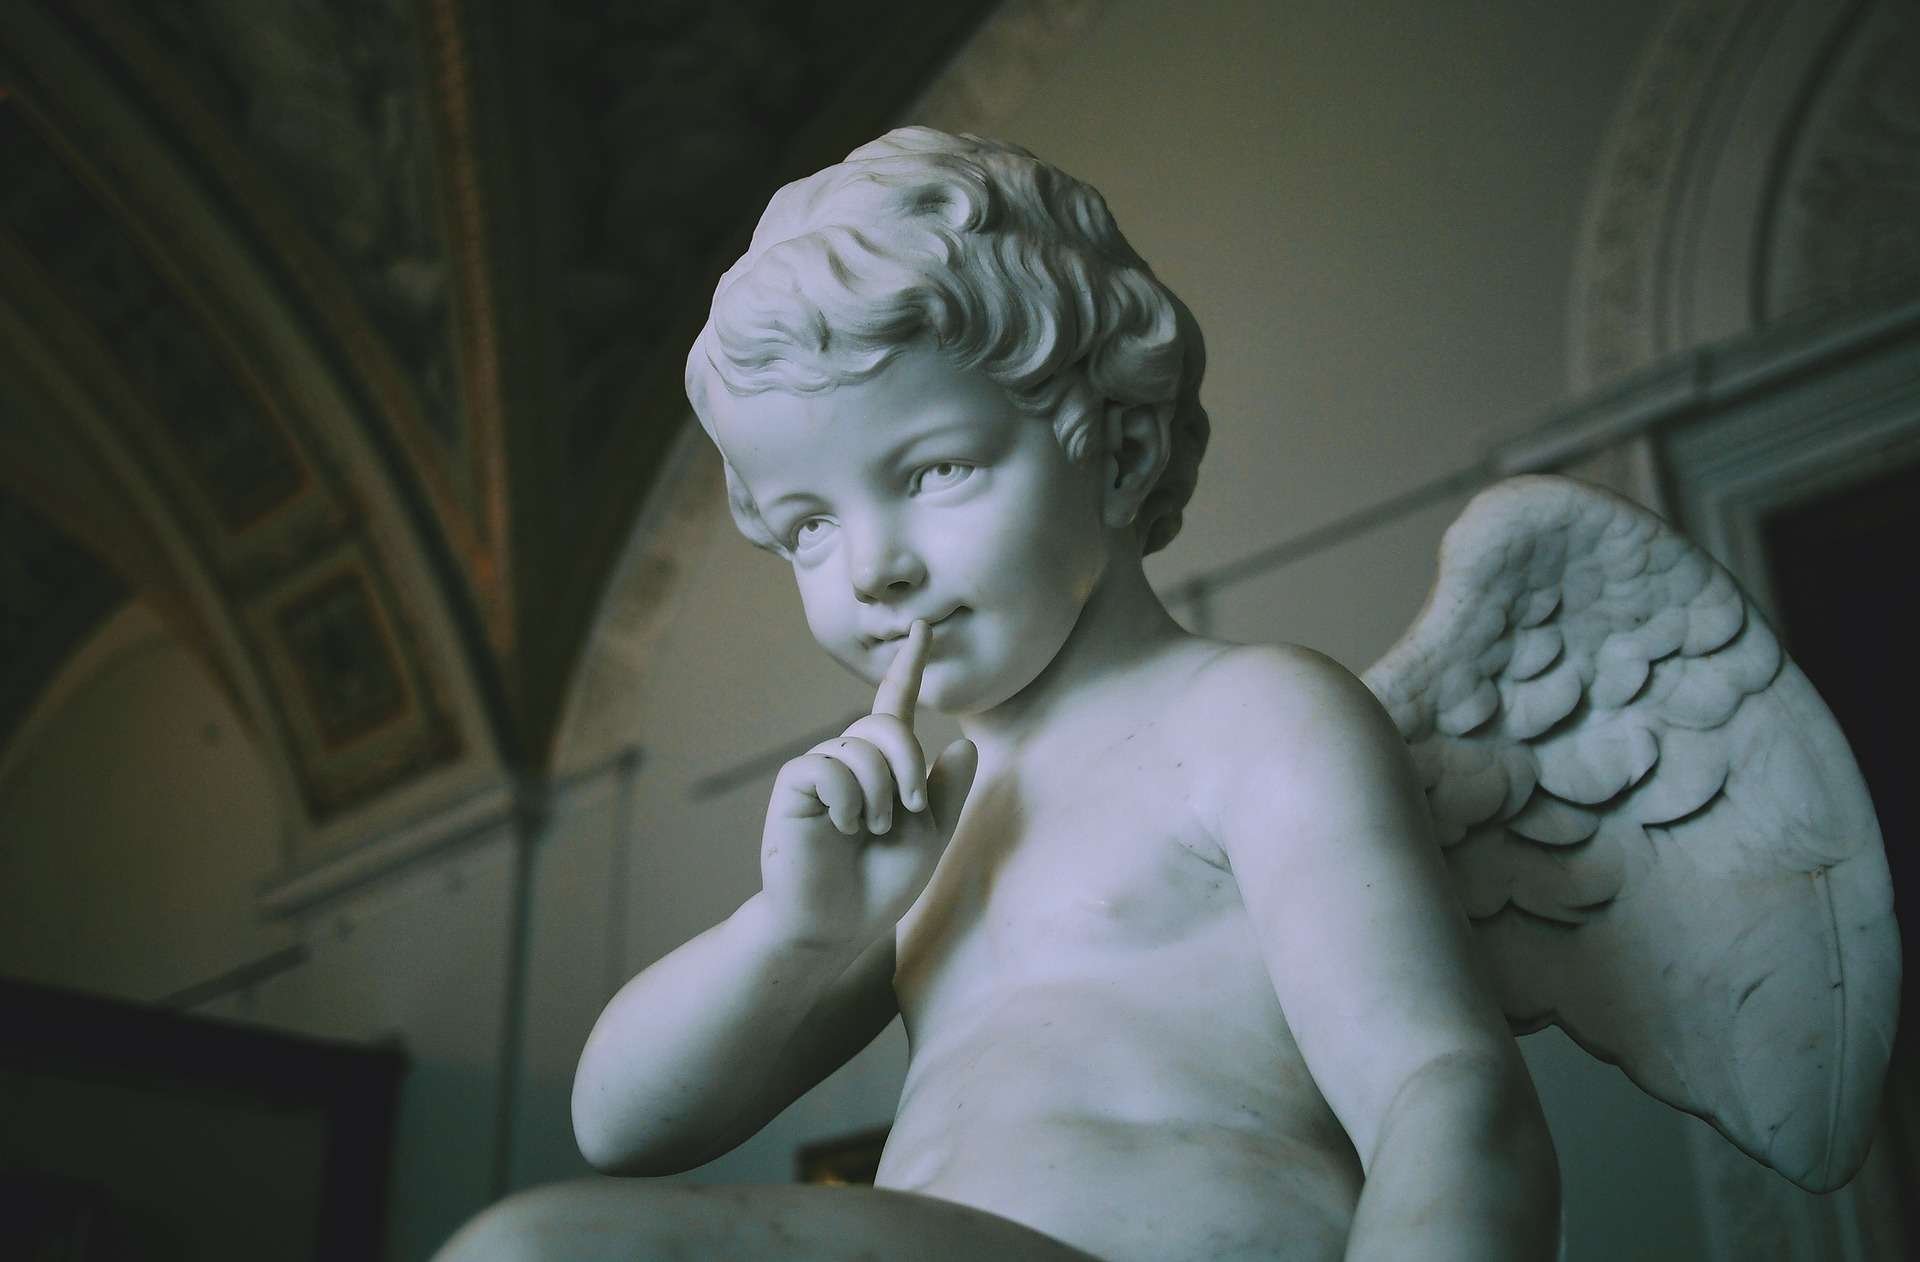 An angel statue.